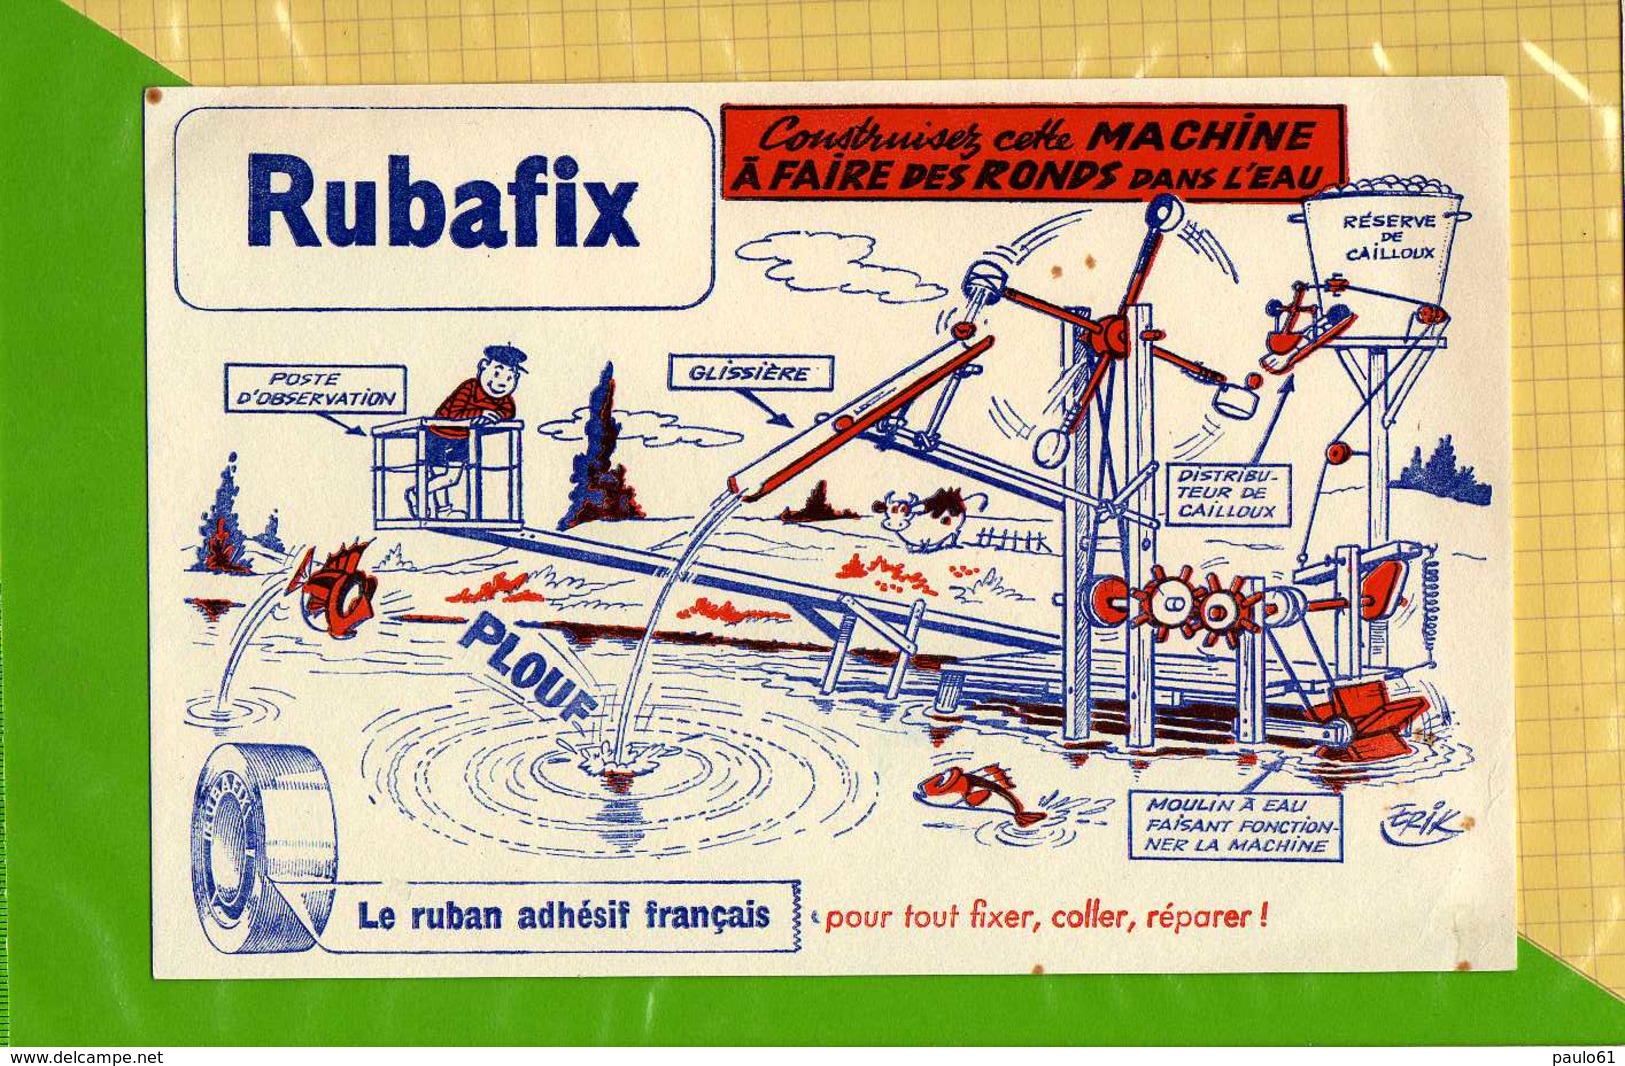 2 BUVARDS : Rubafix Dessins Inventions Creations Ronds Dans L'eau ; Chasse Sous Marine Signé Erik - Papierwaren